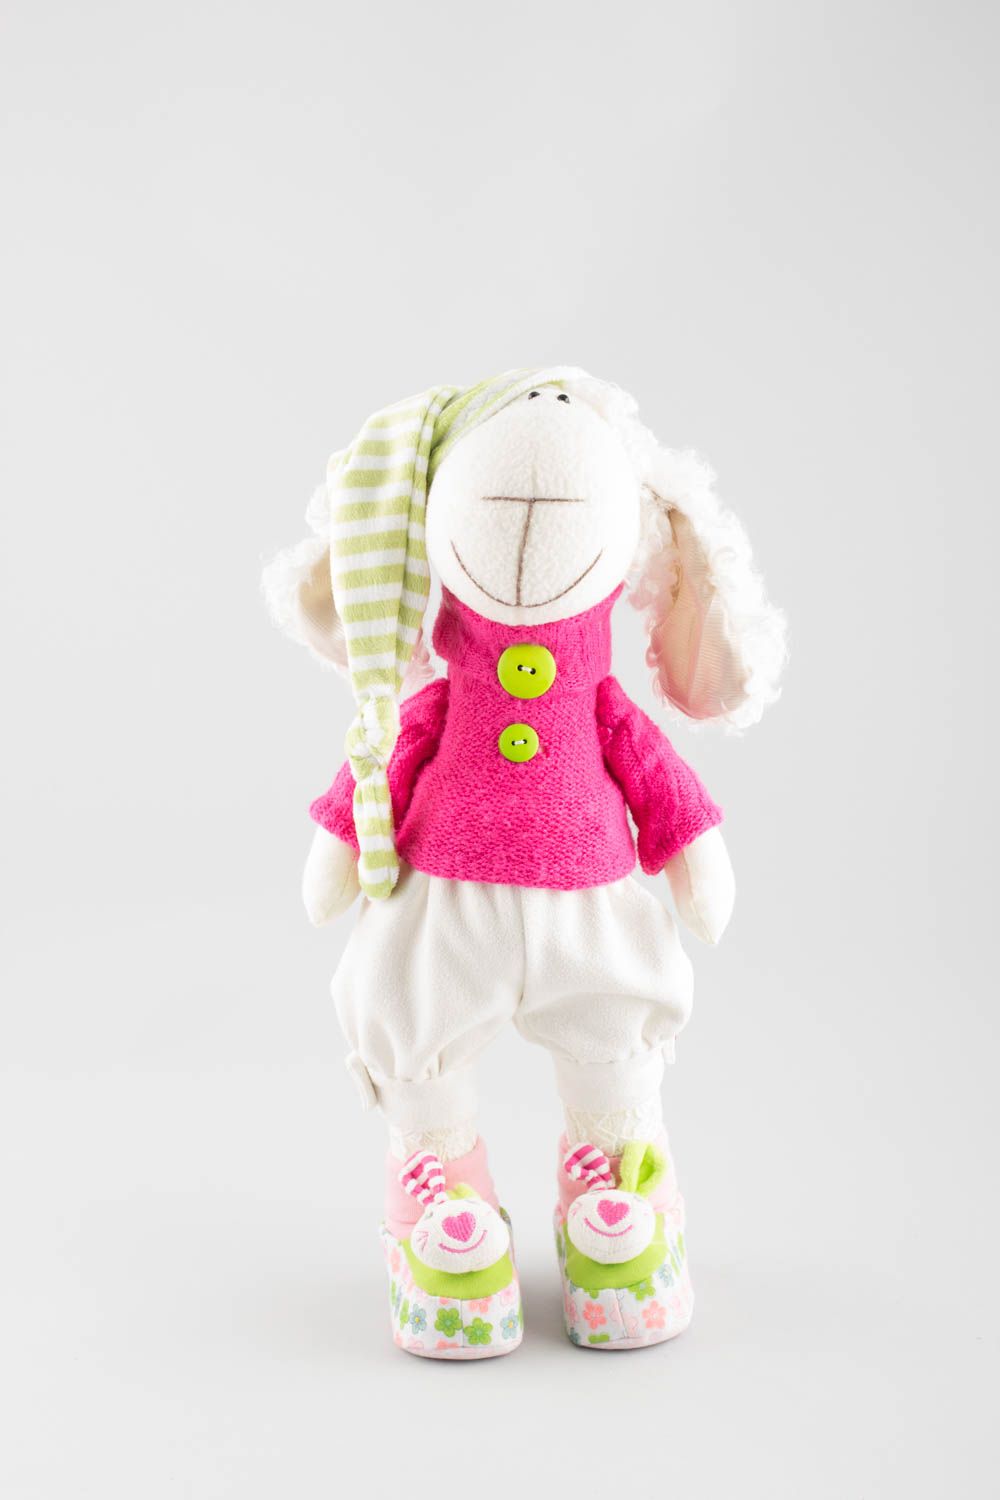 Textil Kuscheltier Schaf mit Mütze niedlich Spielzeug für Kinder und Dekor  foto 2